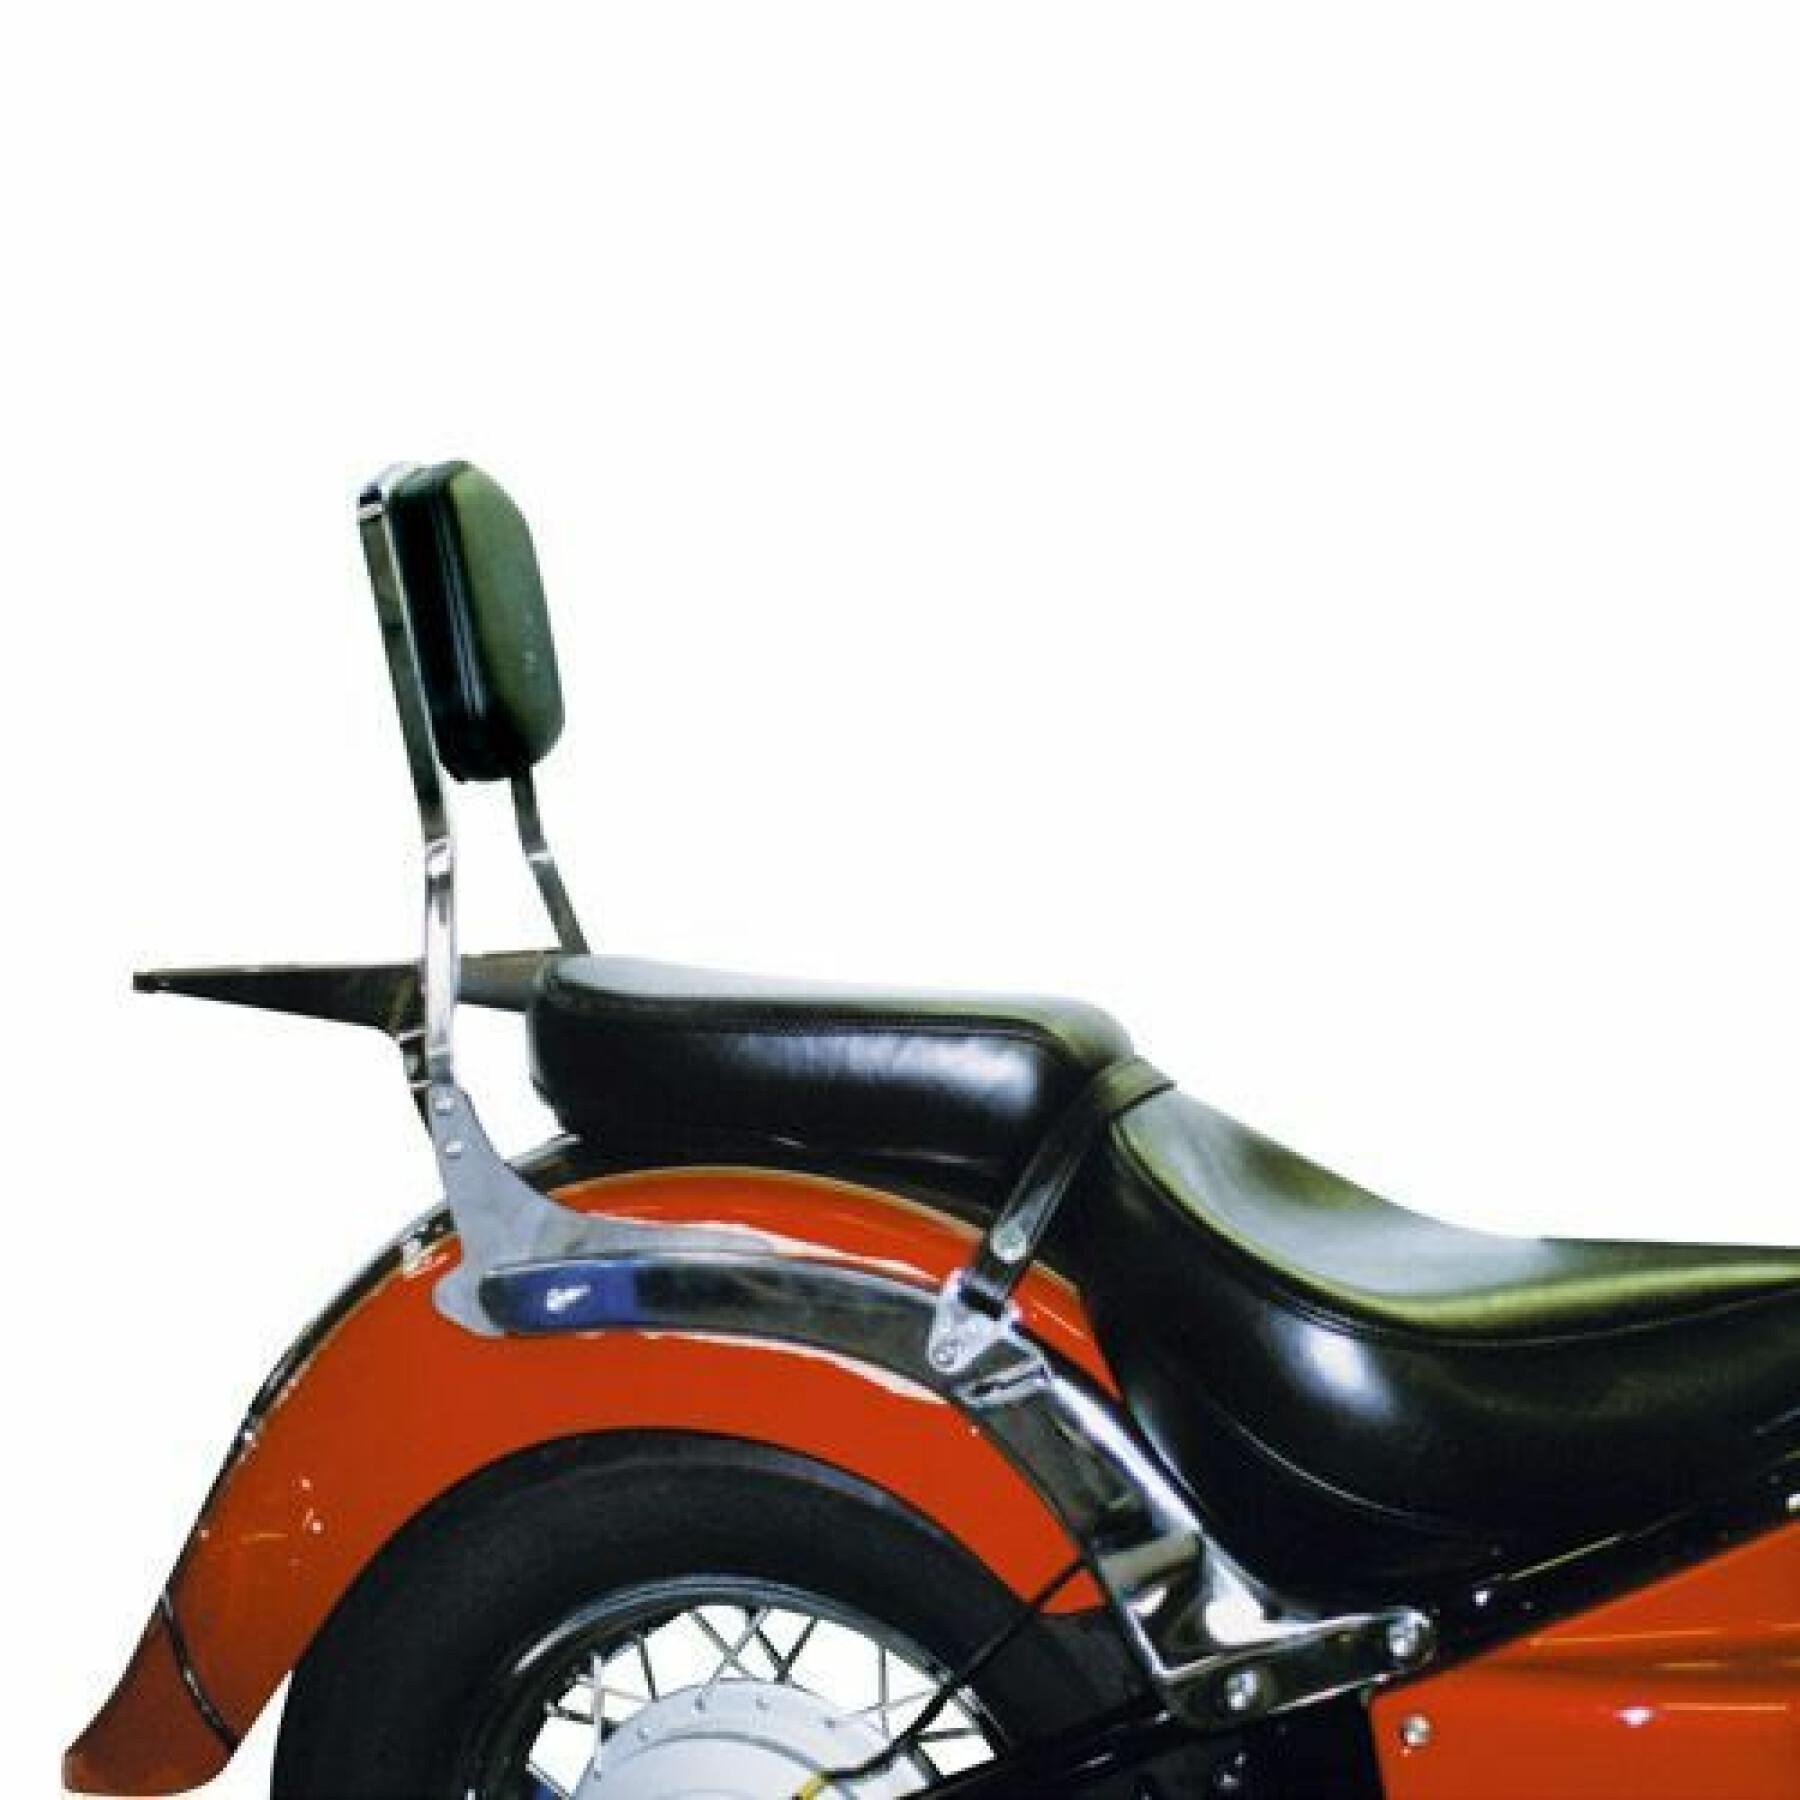 Topcase-Rückwand Givi moto Guzzi v9 roamer/bobberr